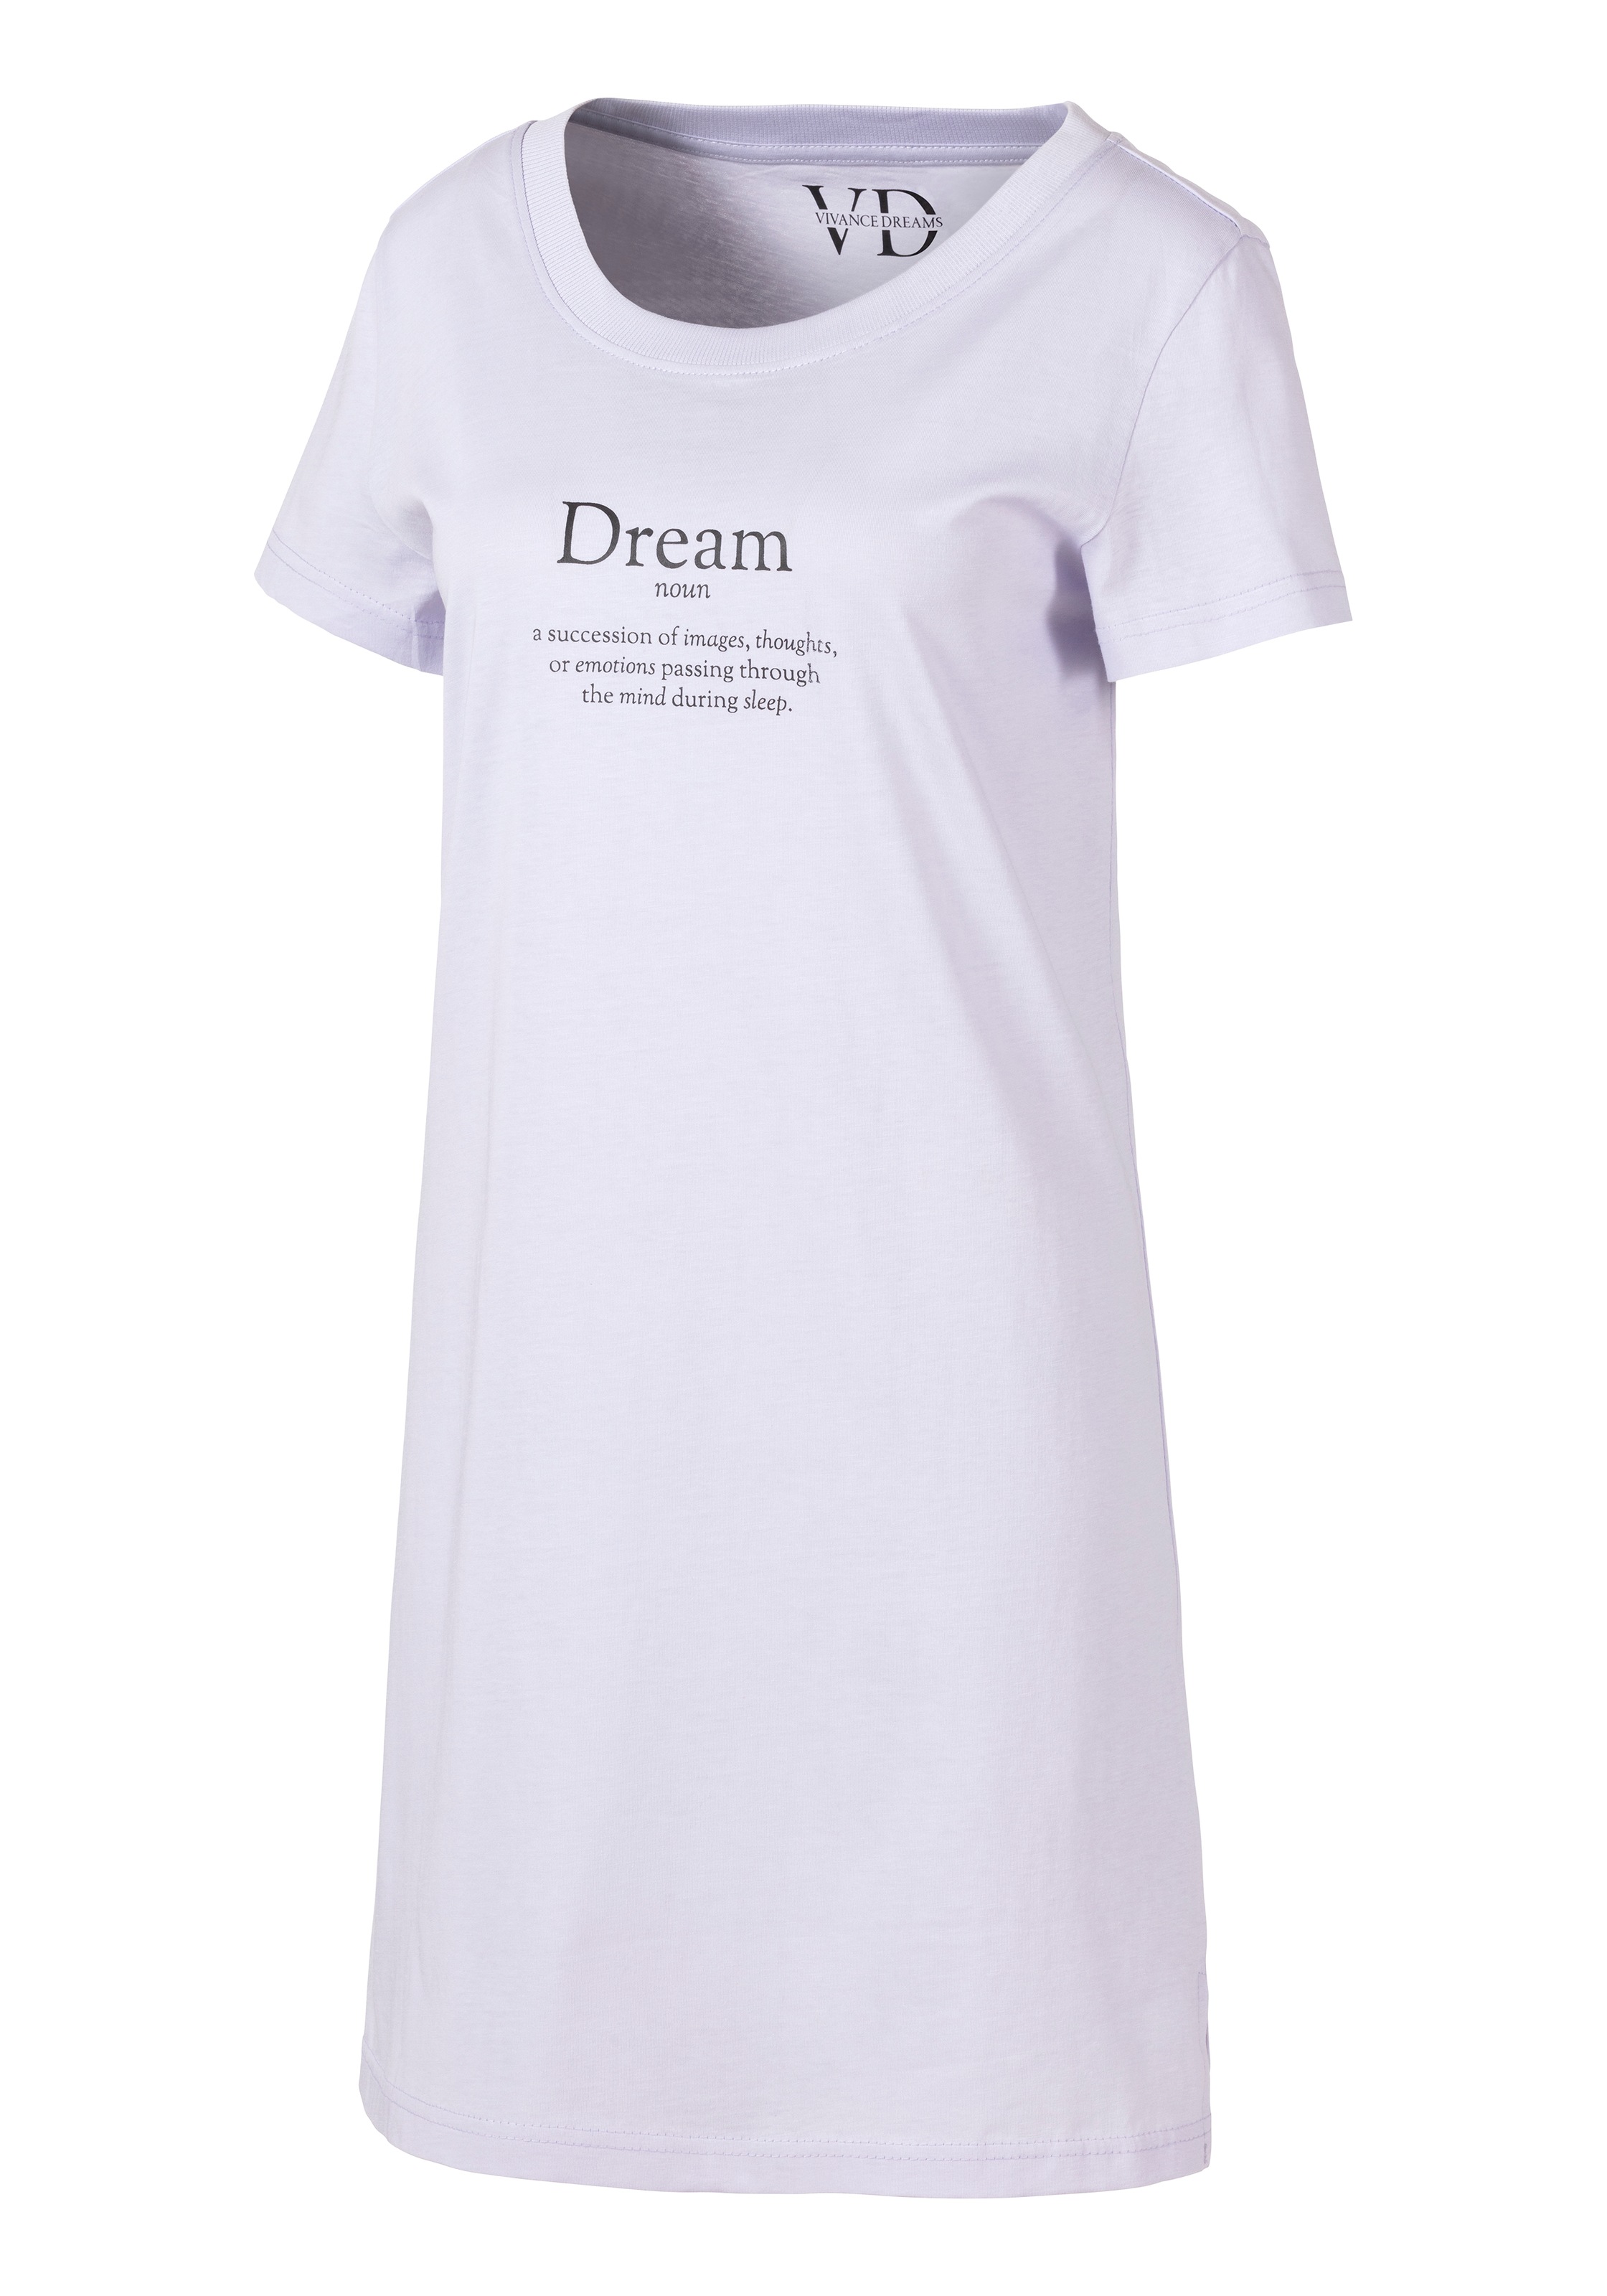 Vivance Dreams Nachthemd, mit Statementdruck